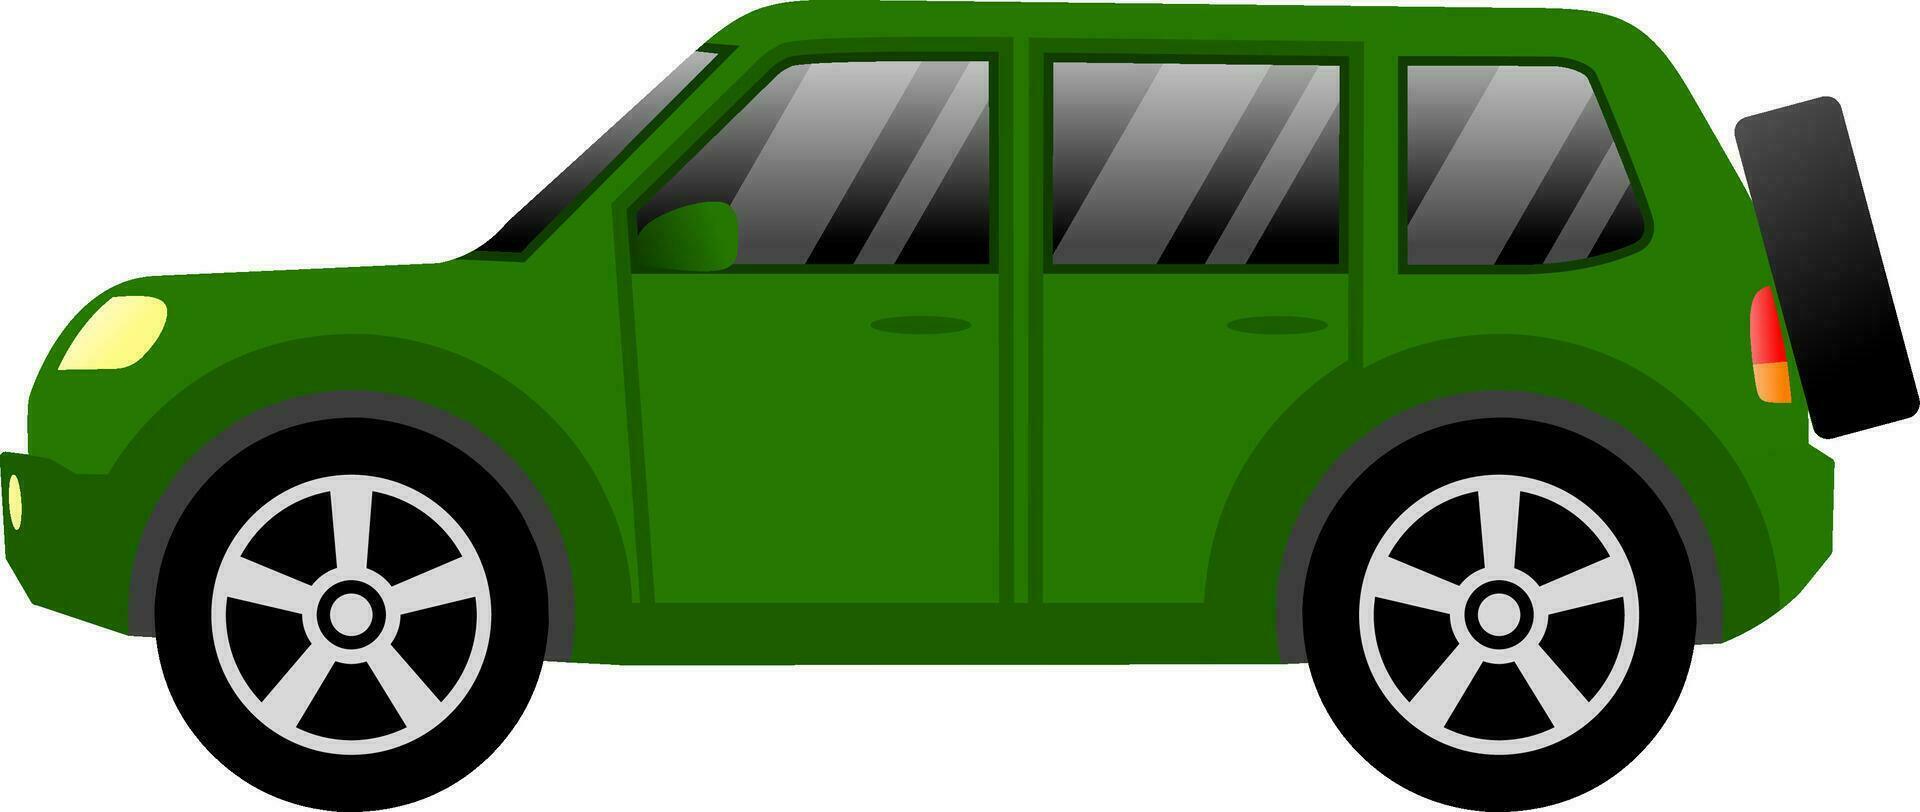 suv Auto Vektor Illustration. suv Auto mit Grün Farbe zum Symbol, Symbol oder unterzeichnen. Sport Nützlichkeit Fahrzeug zum Design Über Auto, Transport, Automobil und Automobil